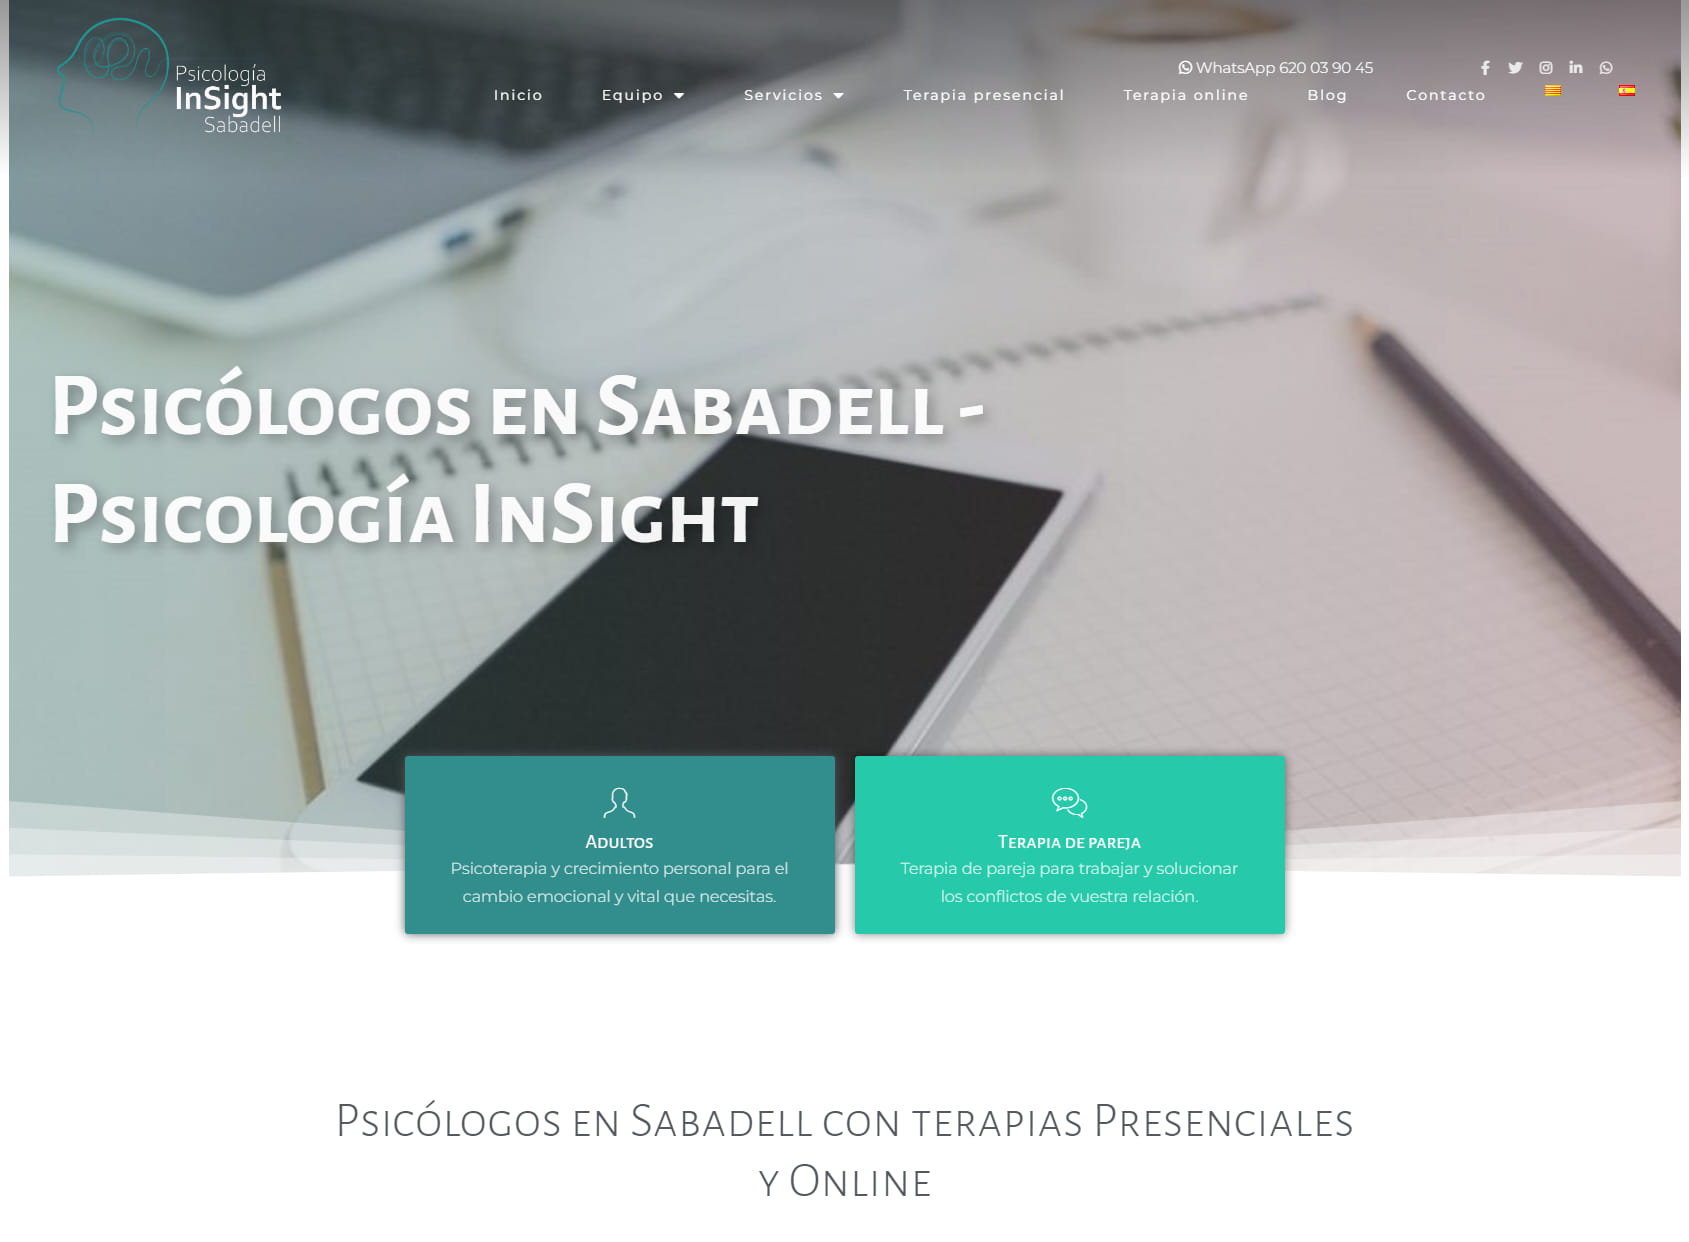 InSight | Psicólogos en Sabadell